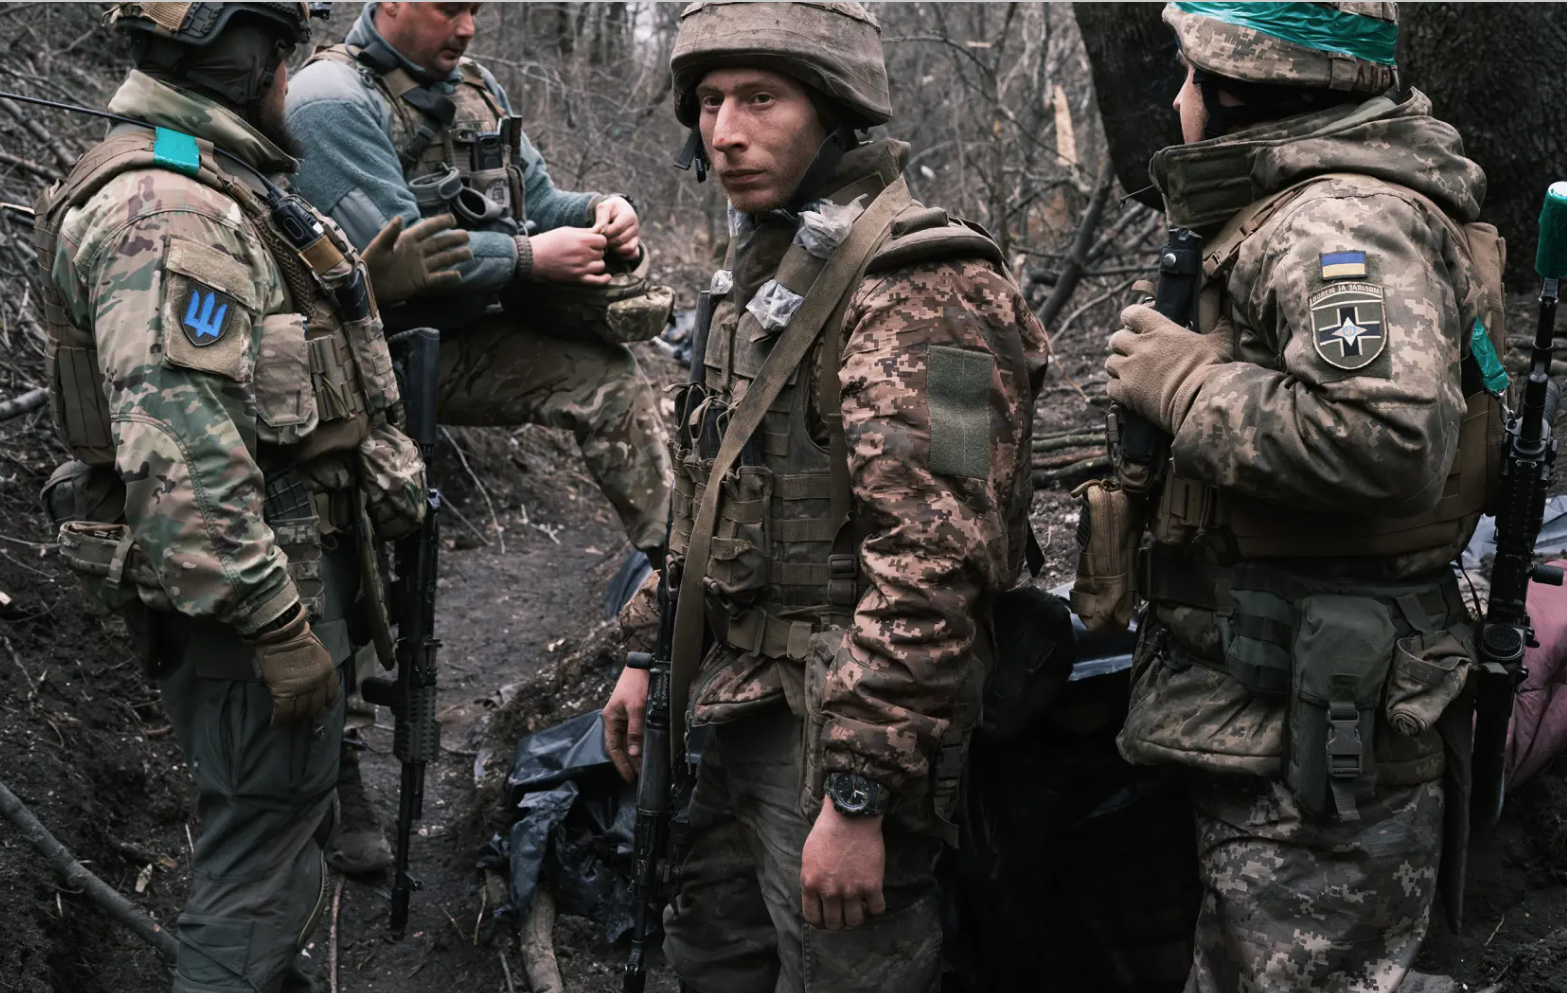 Thú nhận cay đắng của sĩ quan Ukraine khi nhận lệnh chiếm lại tiền đồn Horlivka - Ảnh 1.